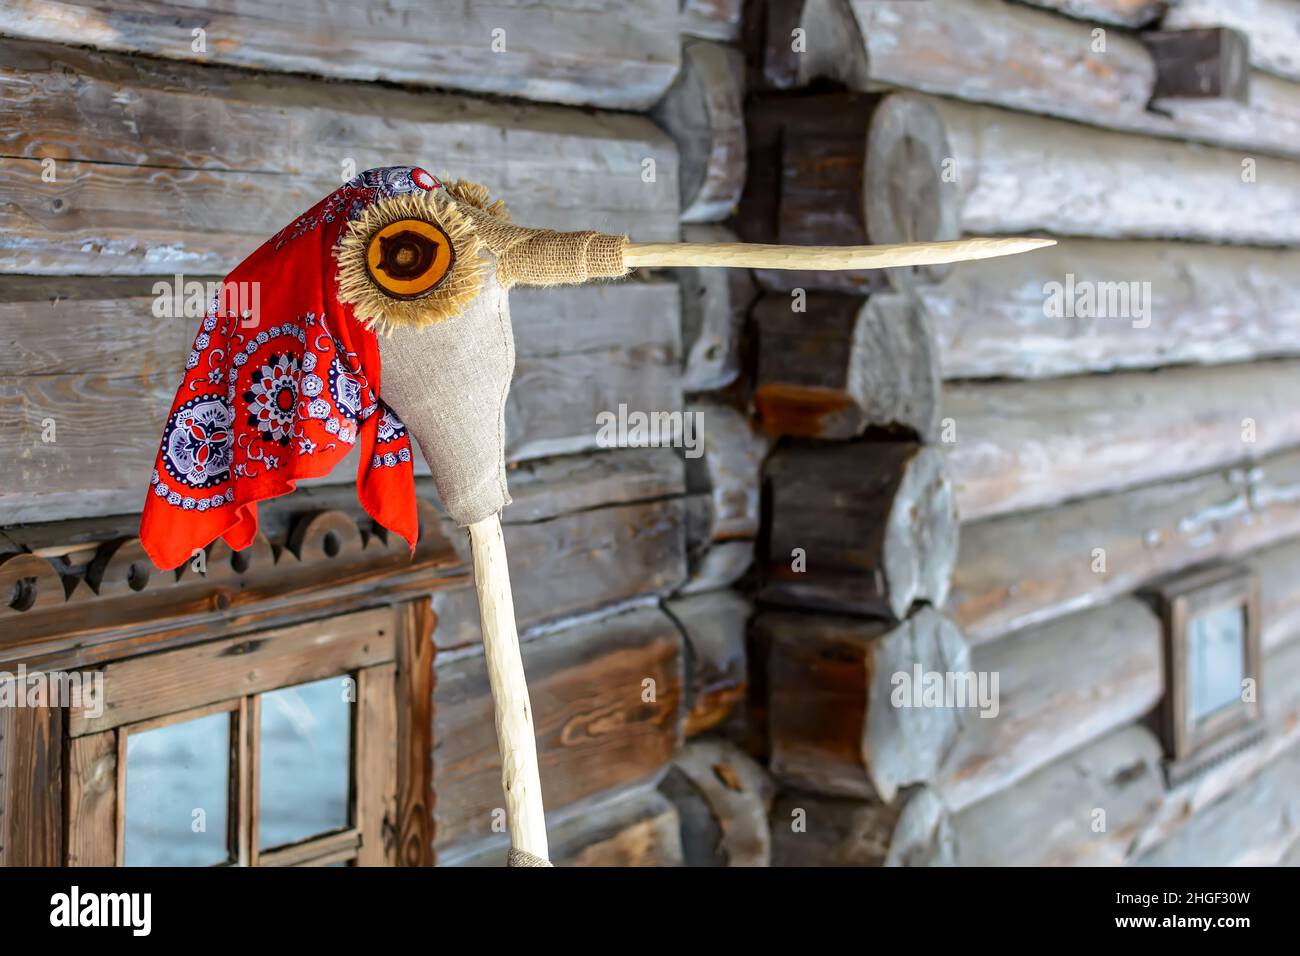 Puppe in Meteņi Mumming Maske und Storchkostüm, trägt rotes Tuch Stockfoto